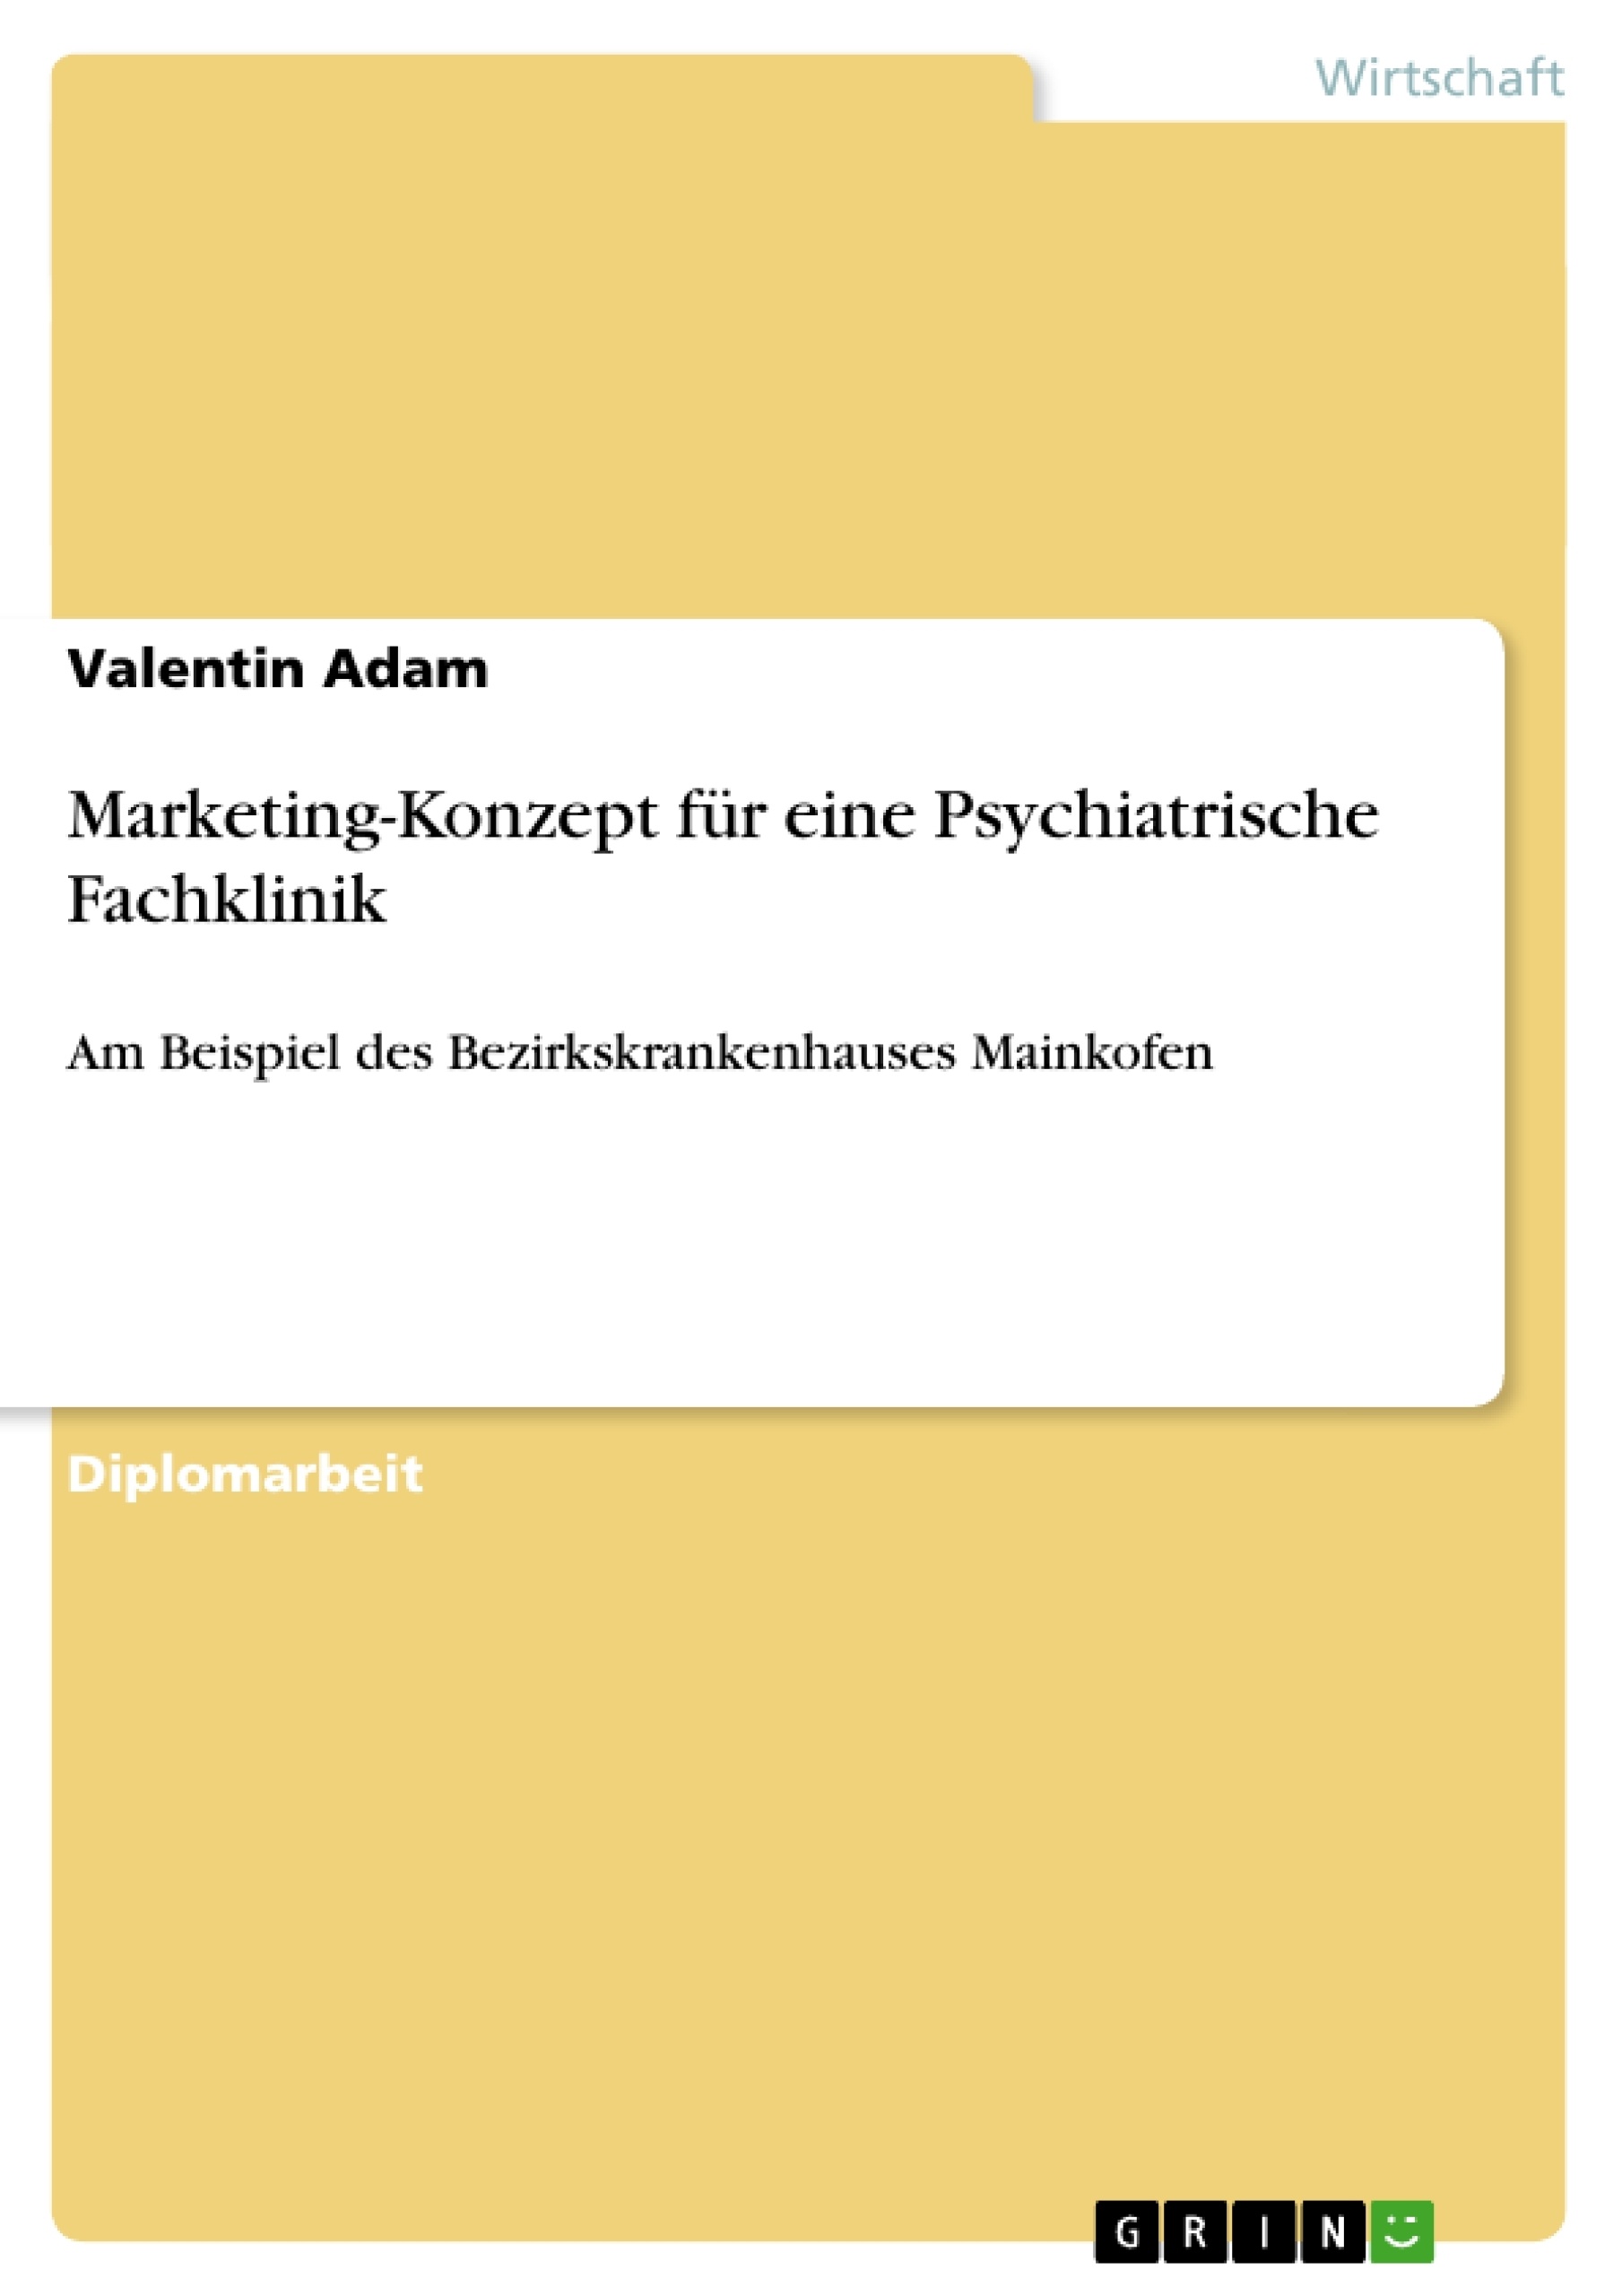 Title: Marketing-Konzept für eine Psychiatrische Fachklinik